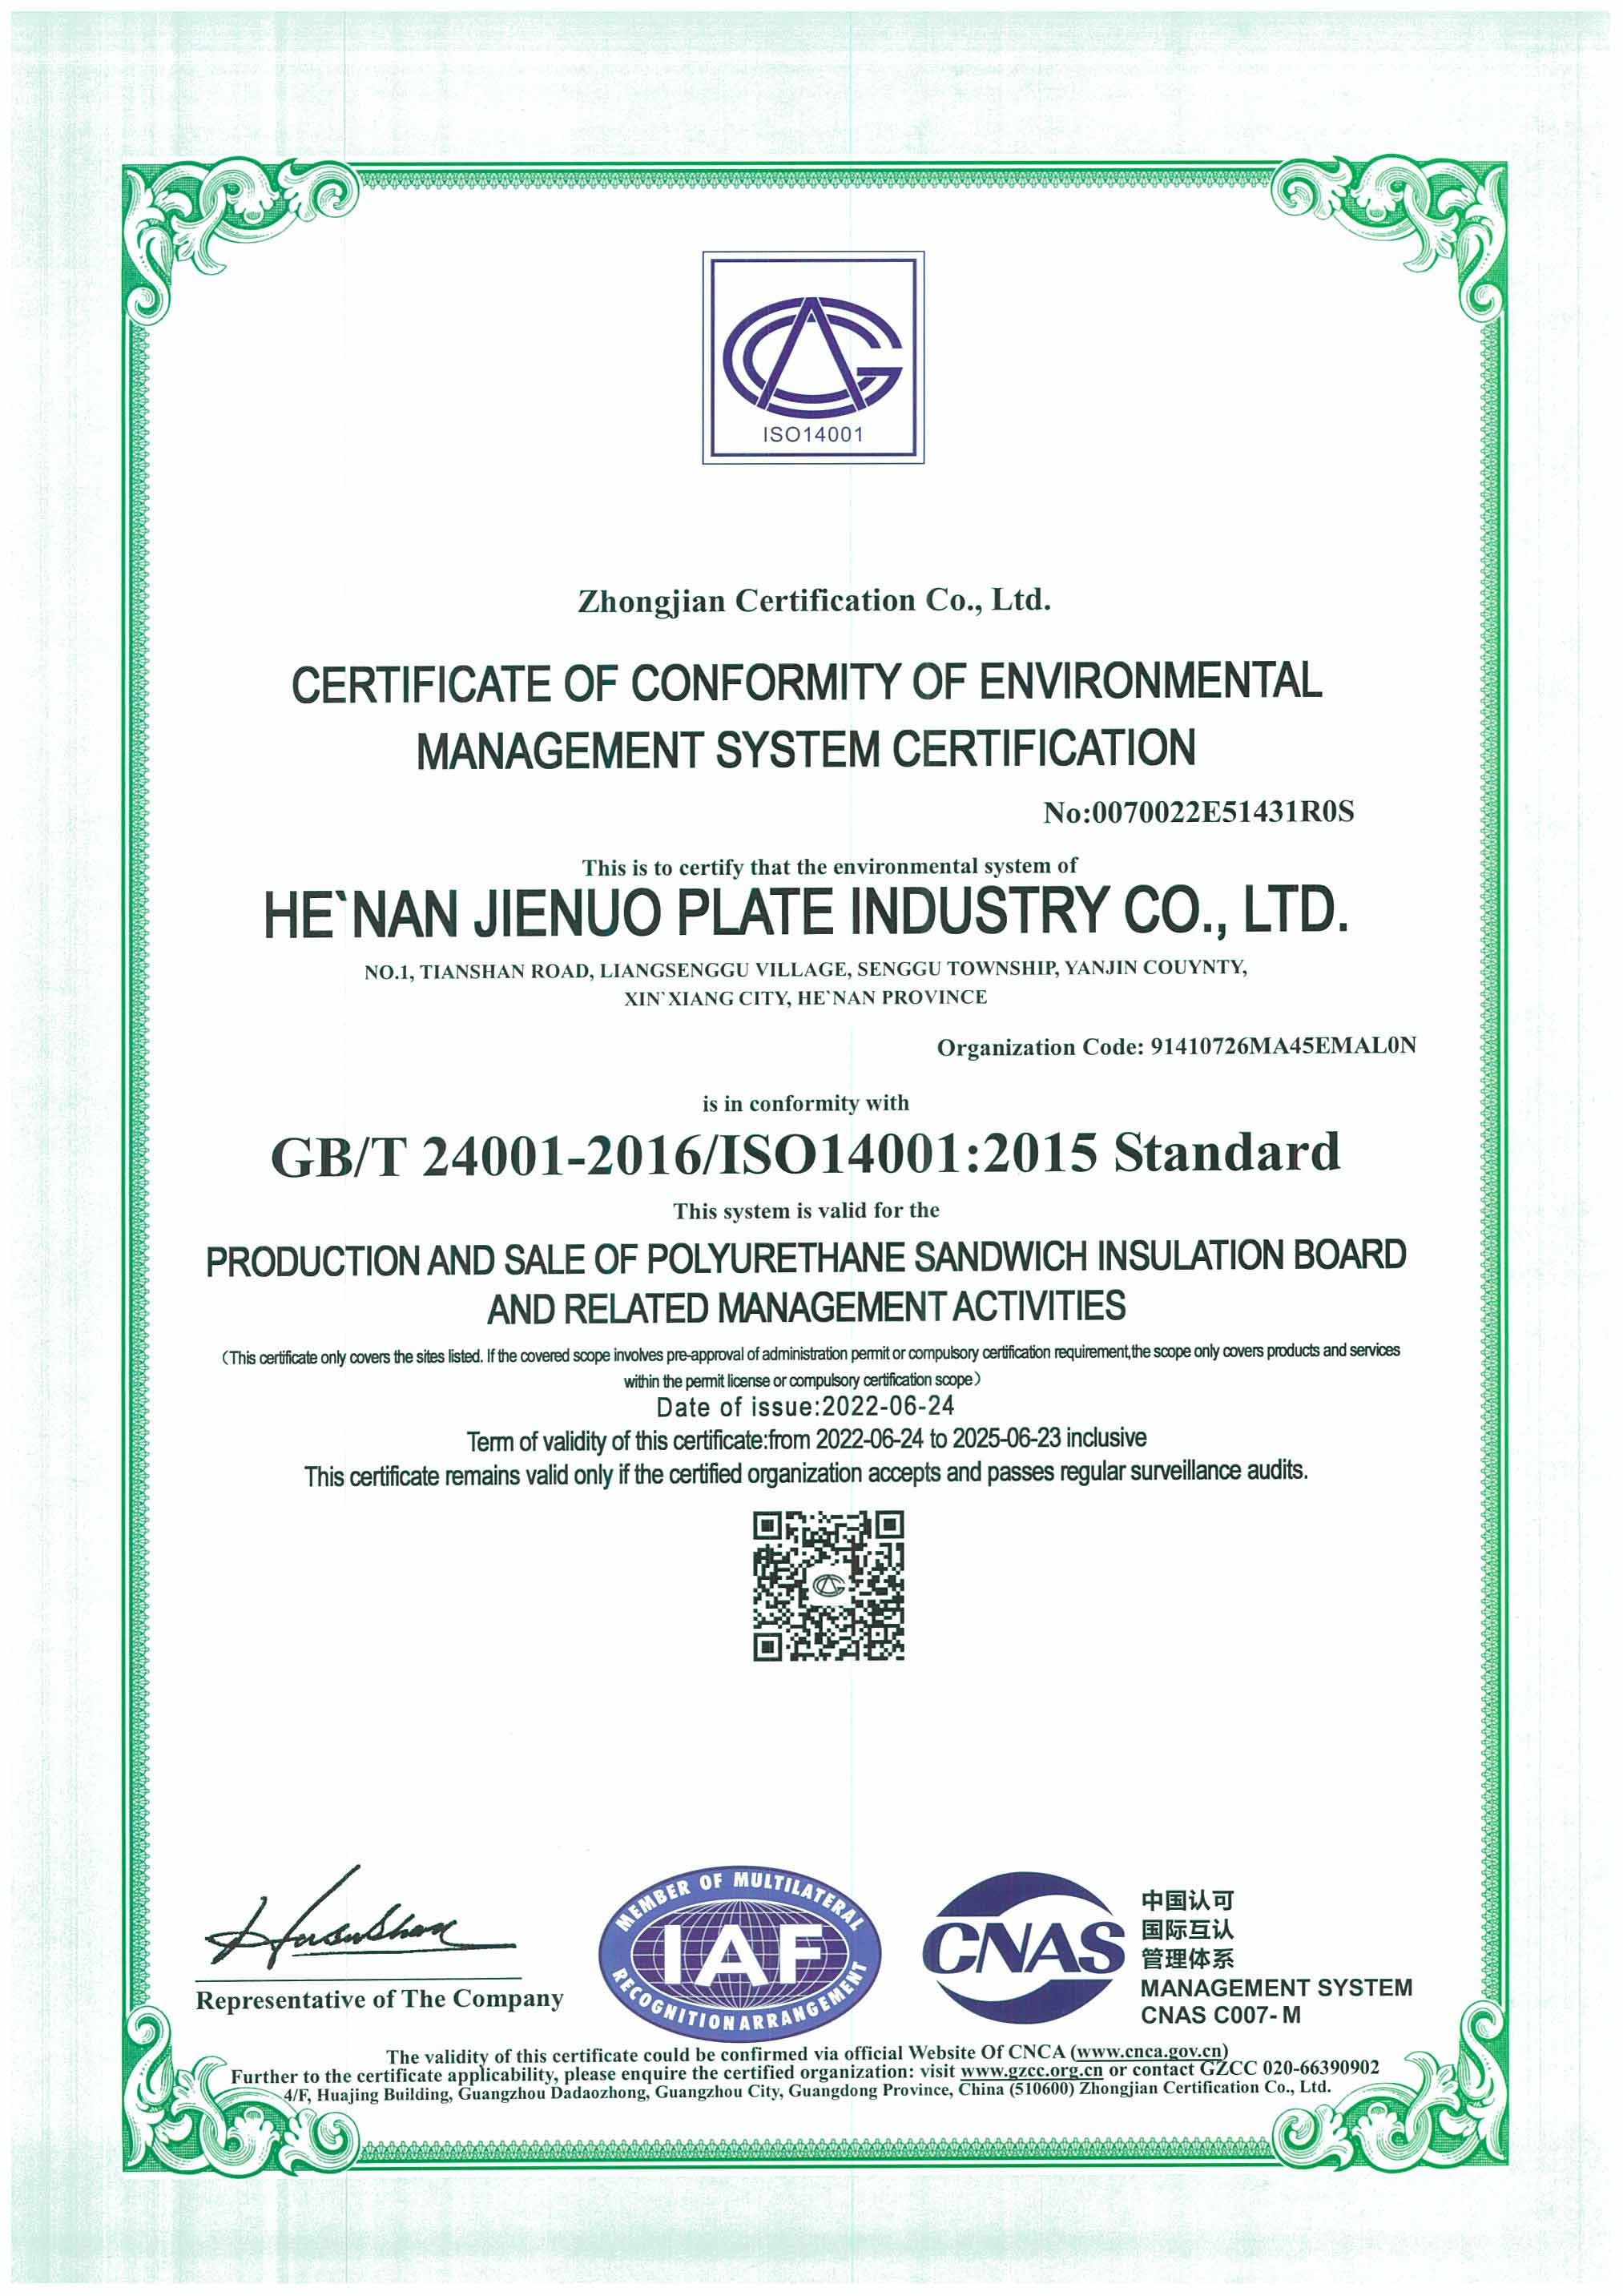 节诺板业环境体系认证证书英文